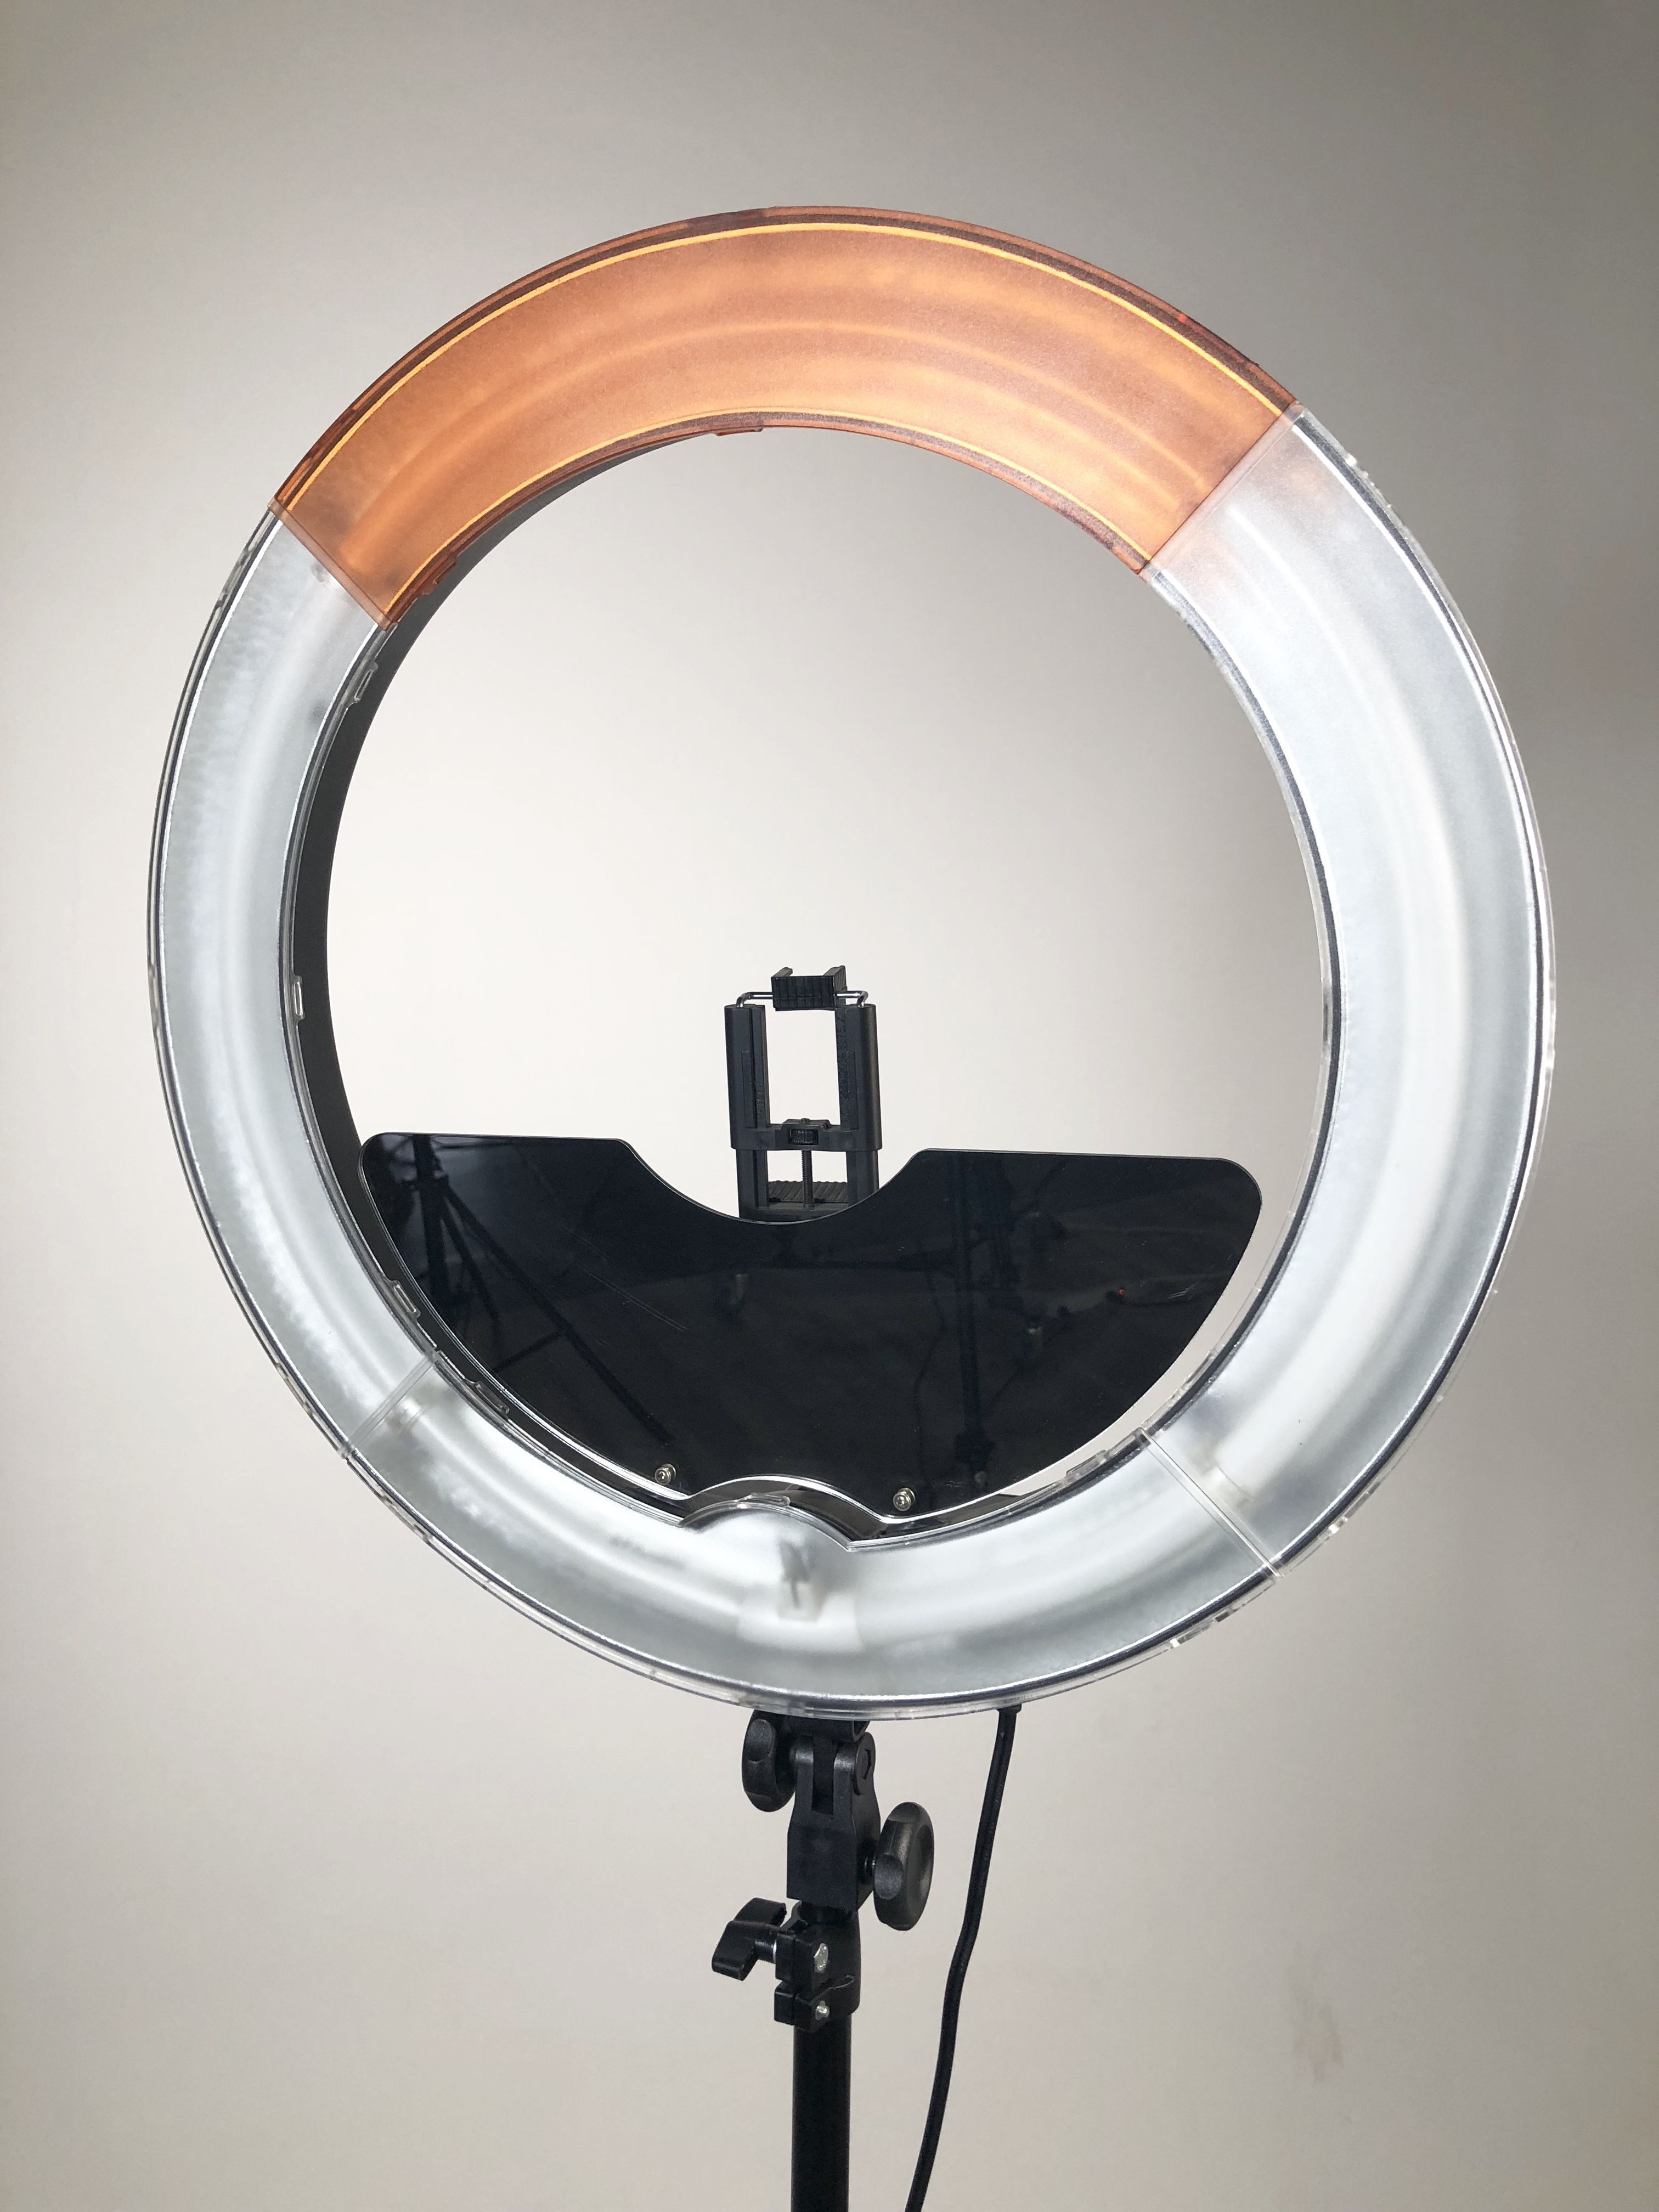 ring light vanity mirror